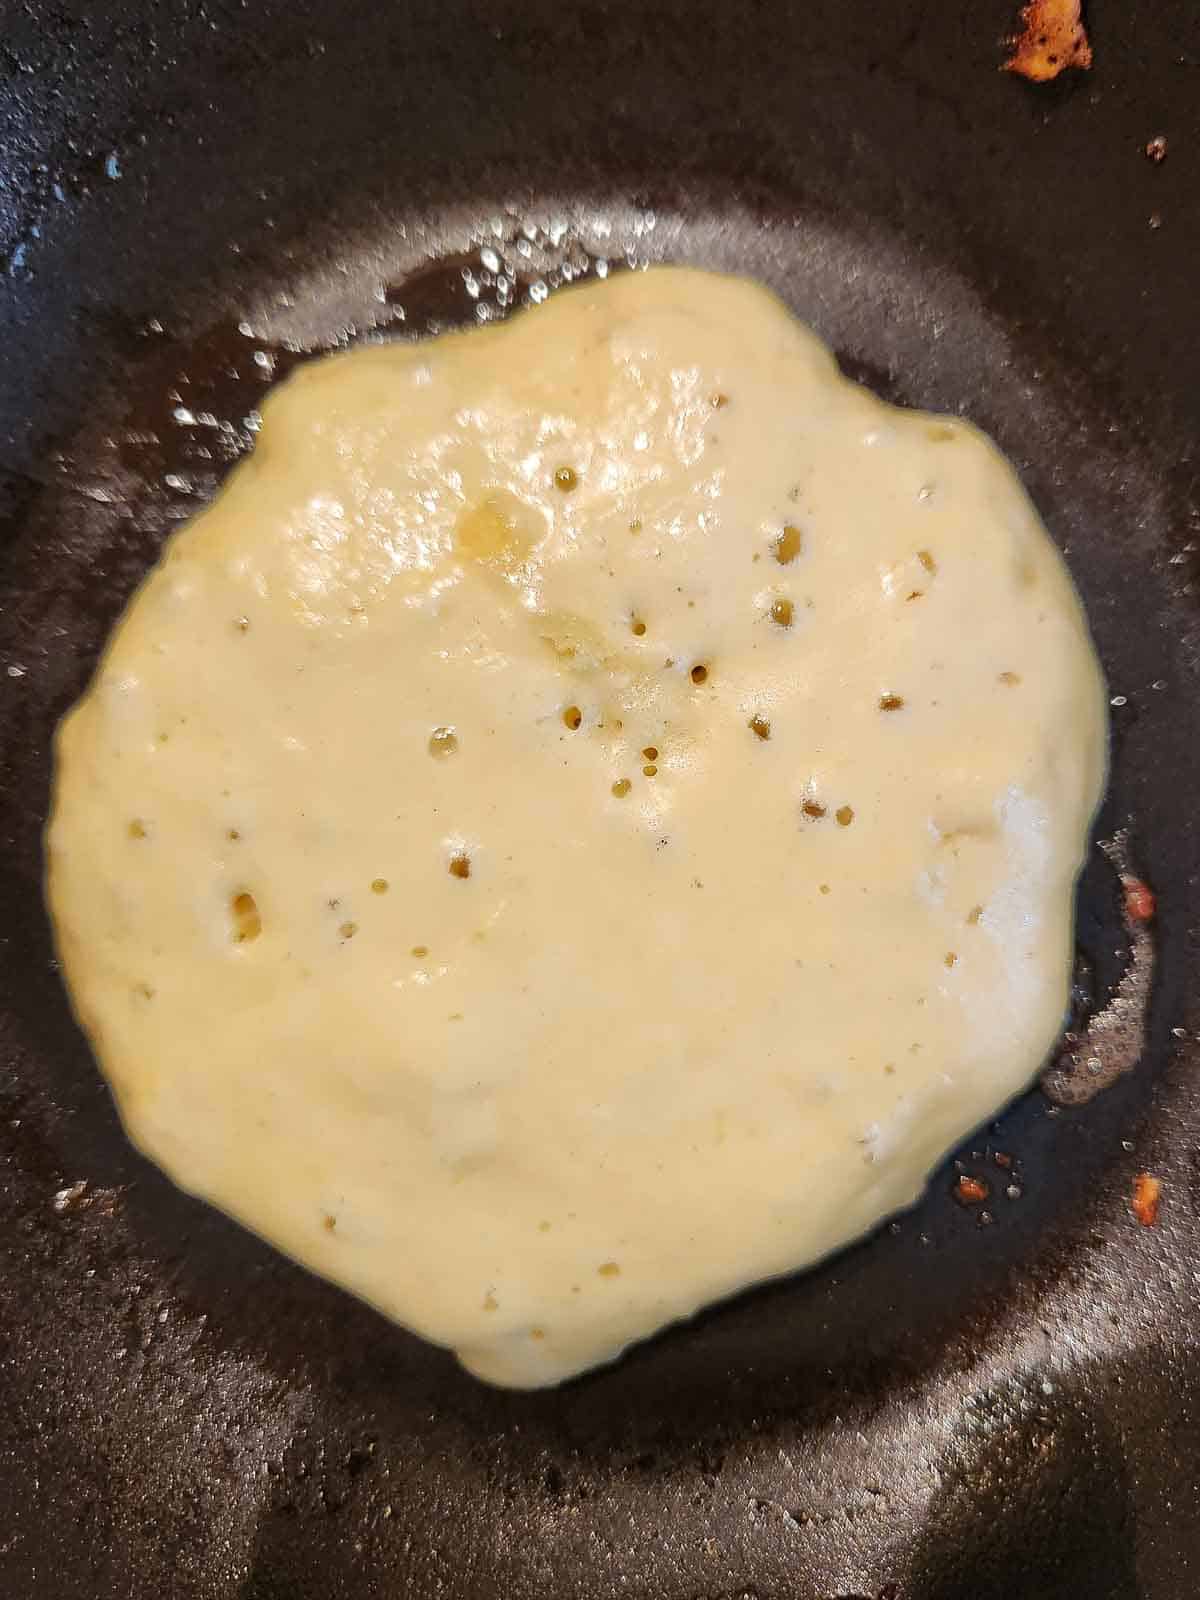 Lemon mascarpone pancake batter in a skillet being cooked.